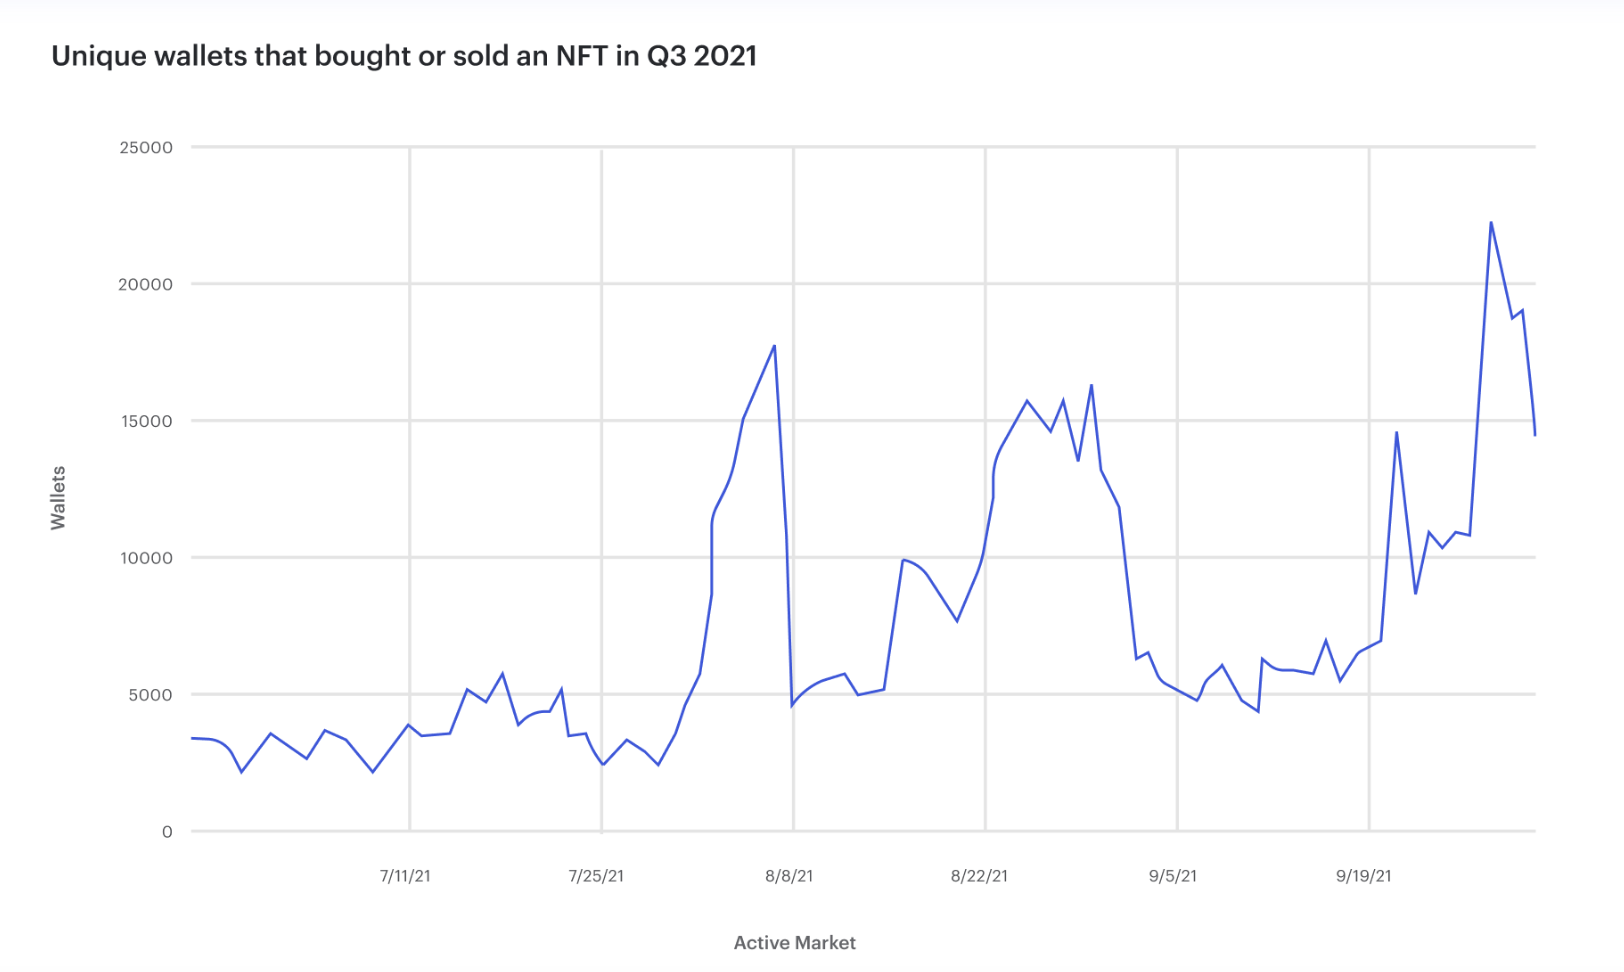 گراف منفرد بٹوے دکھا رہا ہے جنہوں نے Q3 2021 میں NFT خریدا یا بیچا۔